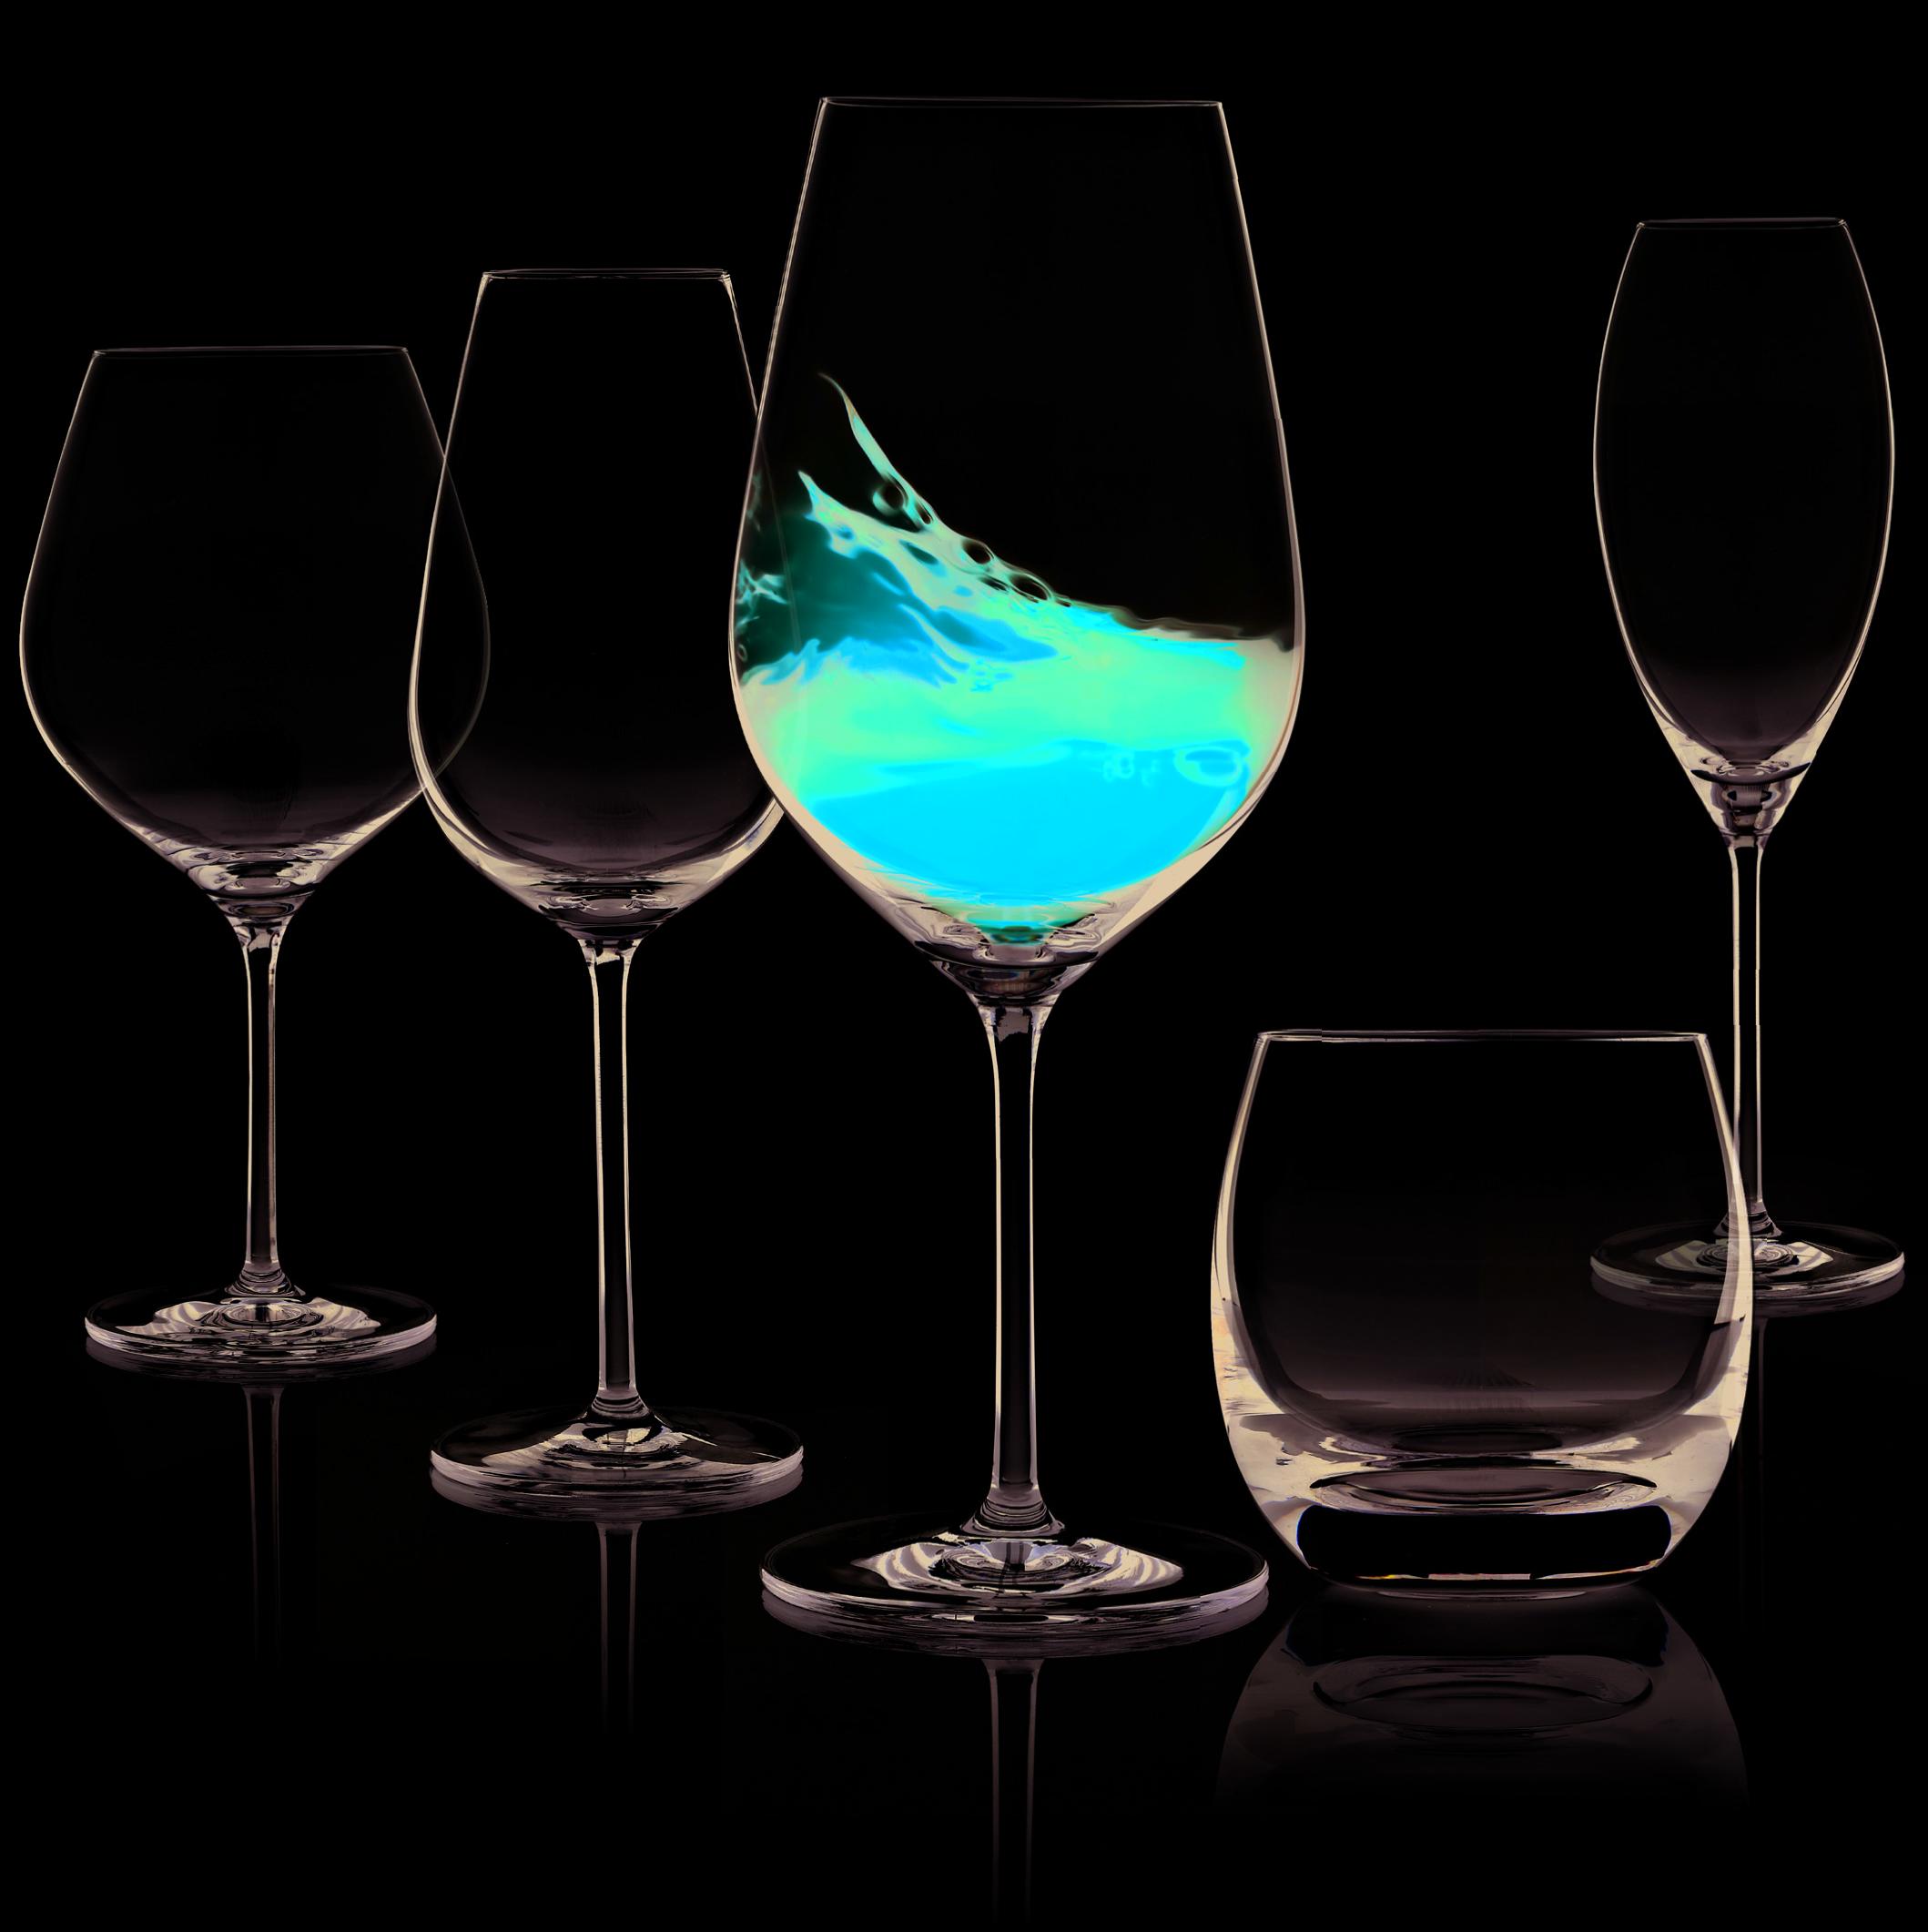 Taiteellinen kuva, jossa viisi erilaista viinilasia mustalla taustalla. Yhdessä lasissa sisällä nestettä, joka läikähtää.